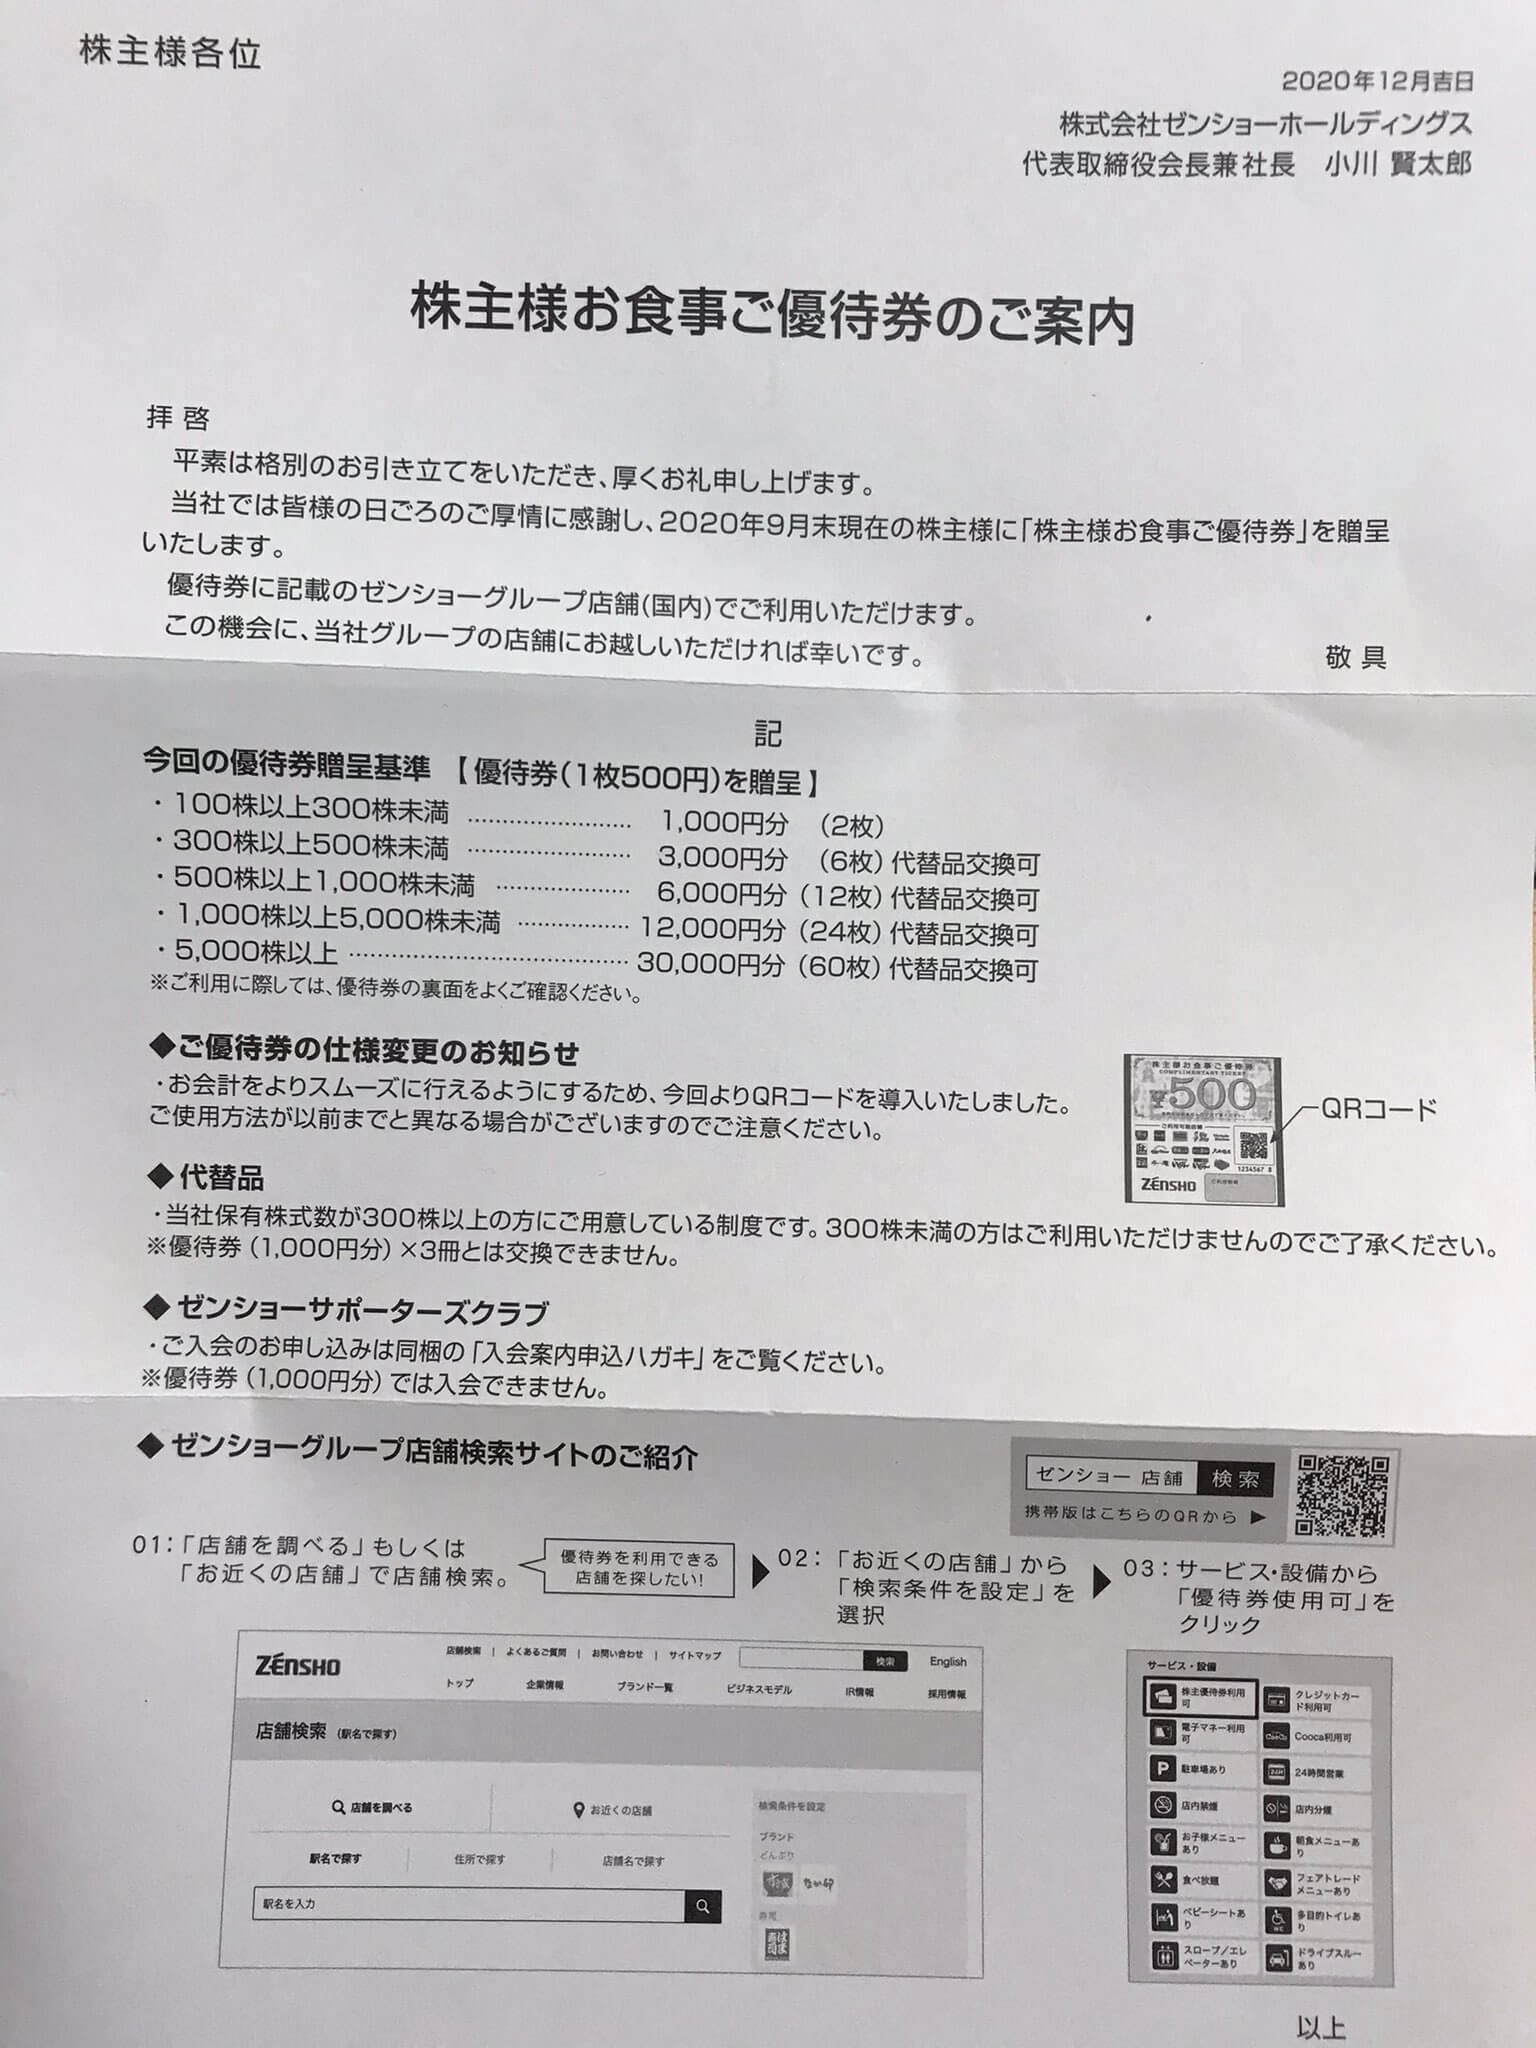 チケットゼンショーホールディングス 株主優待 12000円分